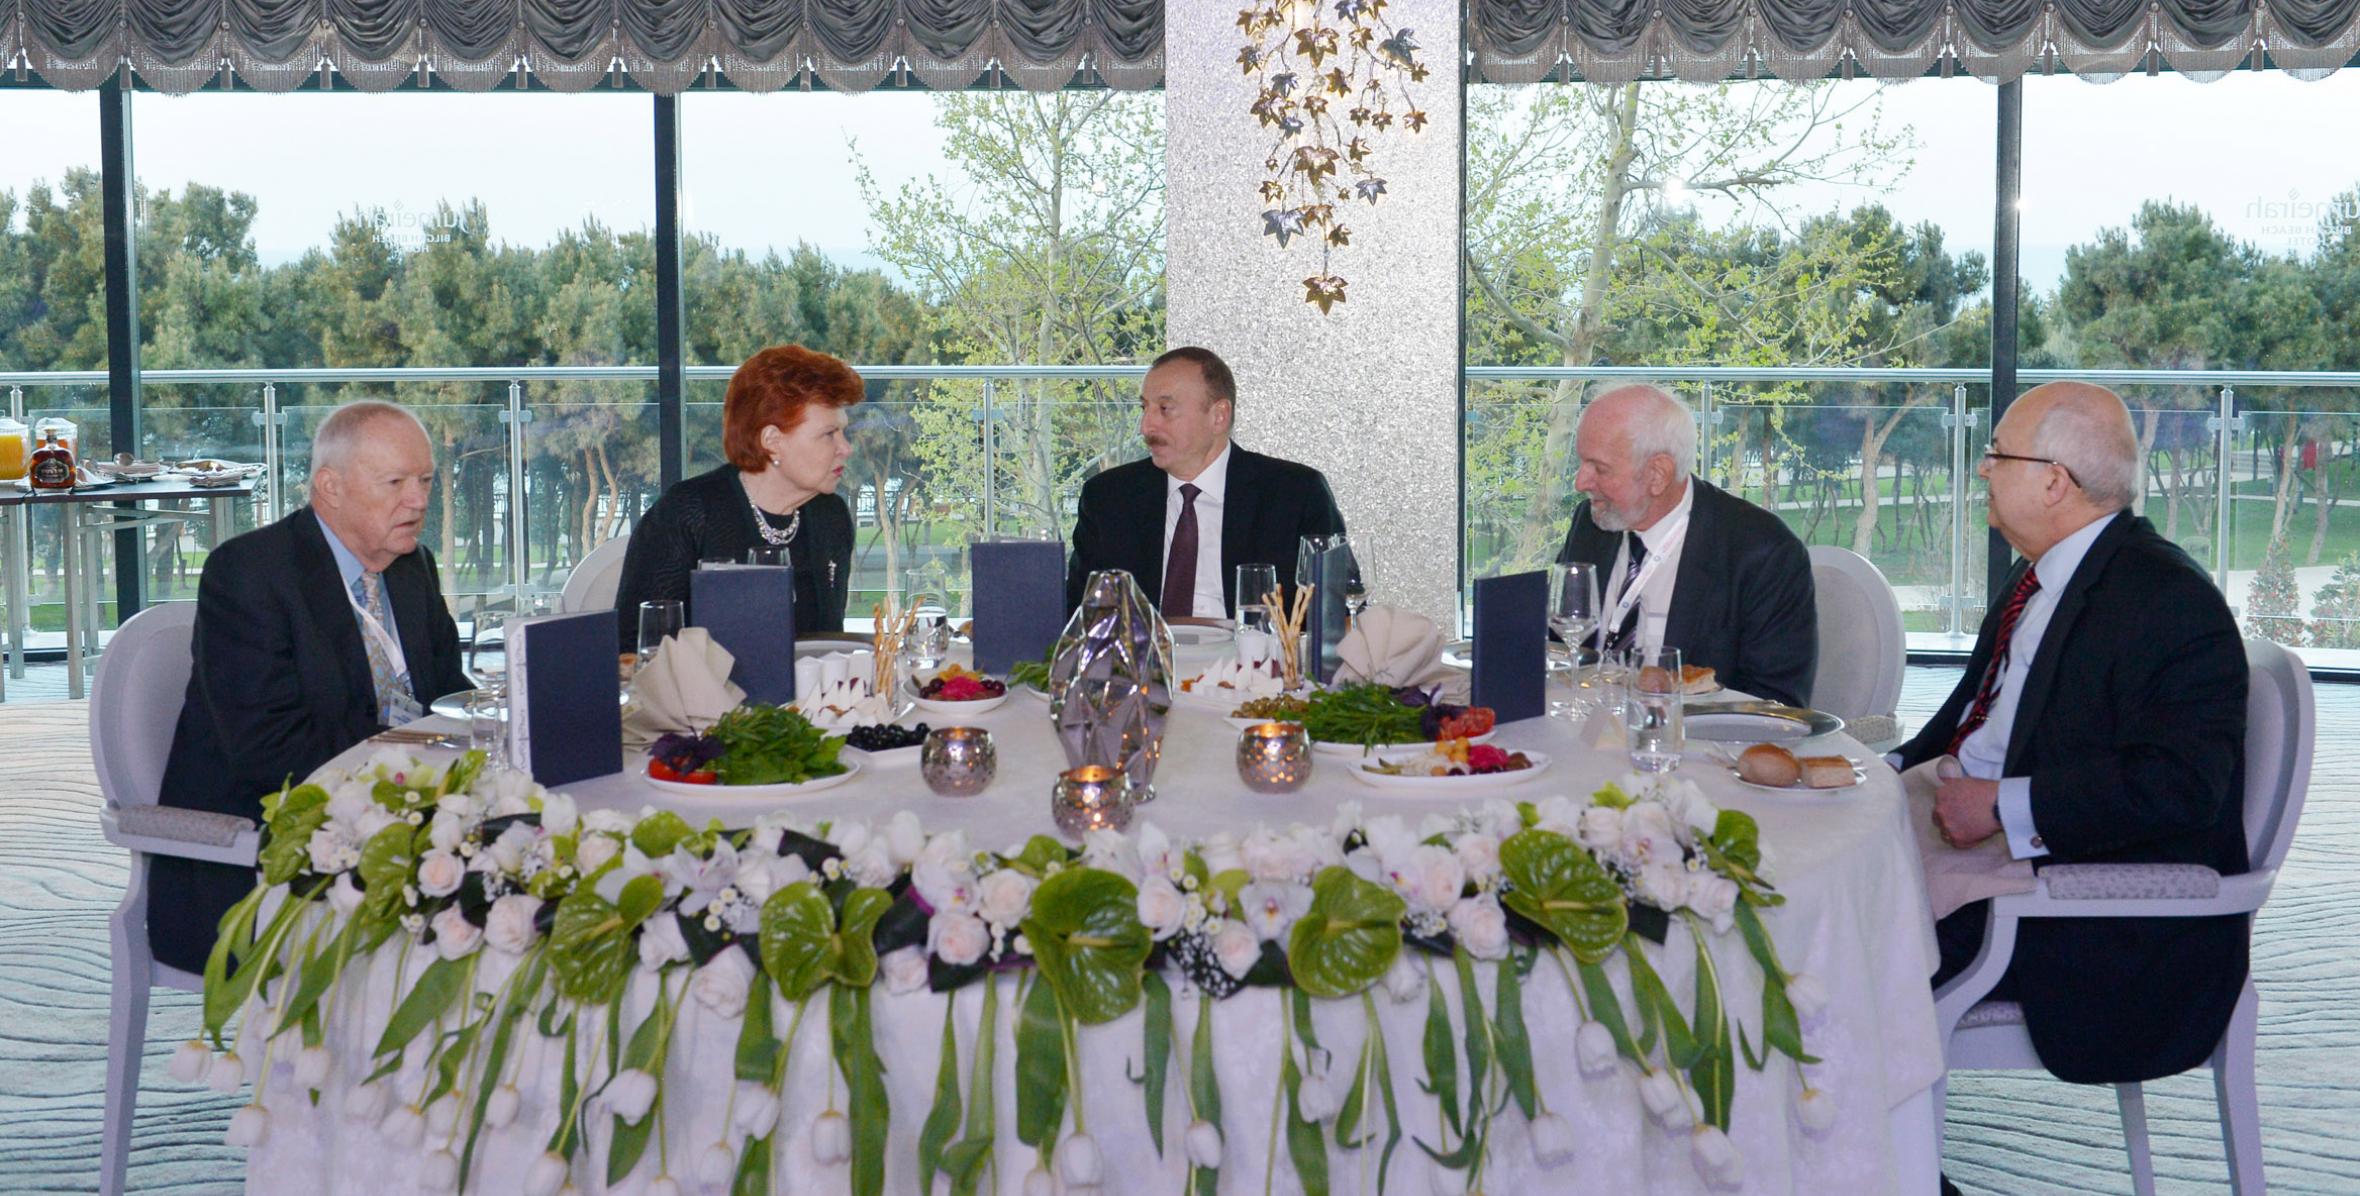 Ильхам Алиев принял участие в обеде, организованном для участников II Глобального форума открытых обществ